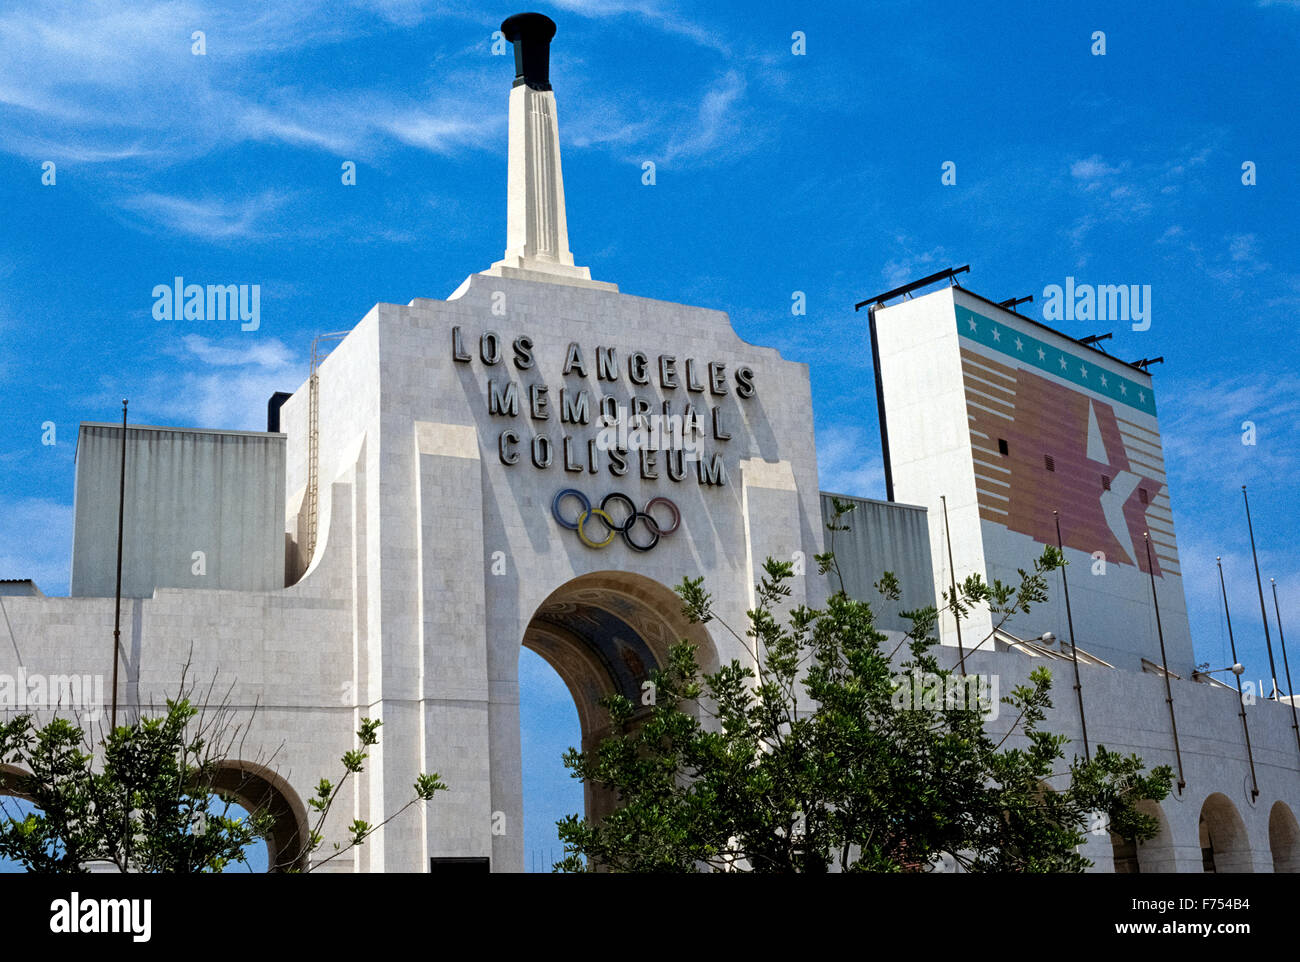 Il Los Angeles Memorial Coliseum è un venerabile outdoor sports stadium nel sud della California, Stati Uniti d'America, che ha ospitato i Giochi Olimpici nel 1932 e 1984. Sin dalla sua inaugurazione nel 1923 è stata la casa stadio della USC Trojans, la squadra di calcio dell'Università della California del Sud. L'imponente ingresso principale nel LA Coliseum è un'arcata visualizzando il simbolo olimpico di cinque anelli interconnessi e la torcia olimpica che si infiamma per eventi speciali. Lo stadio può ospitare più di 93.000 spettatori ed è stato proposto di ospitare i Giochi Olimpici Estivi di nuovo nel 2024. Foto Stock